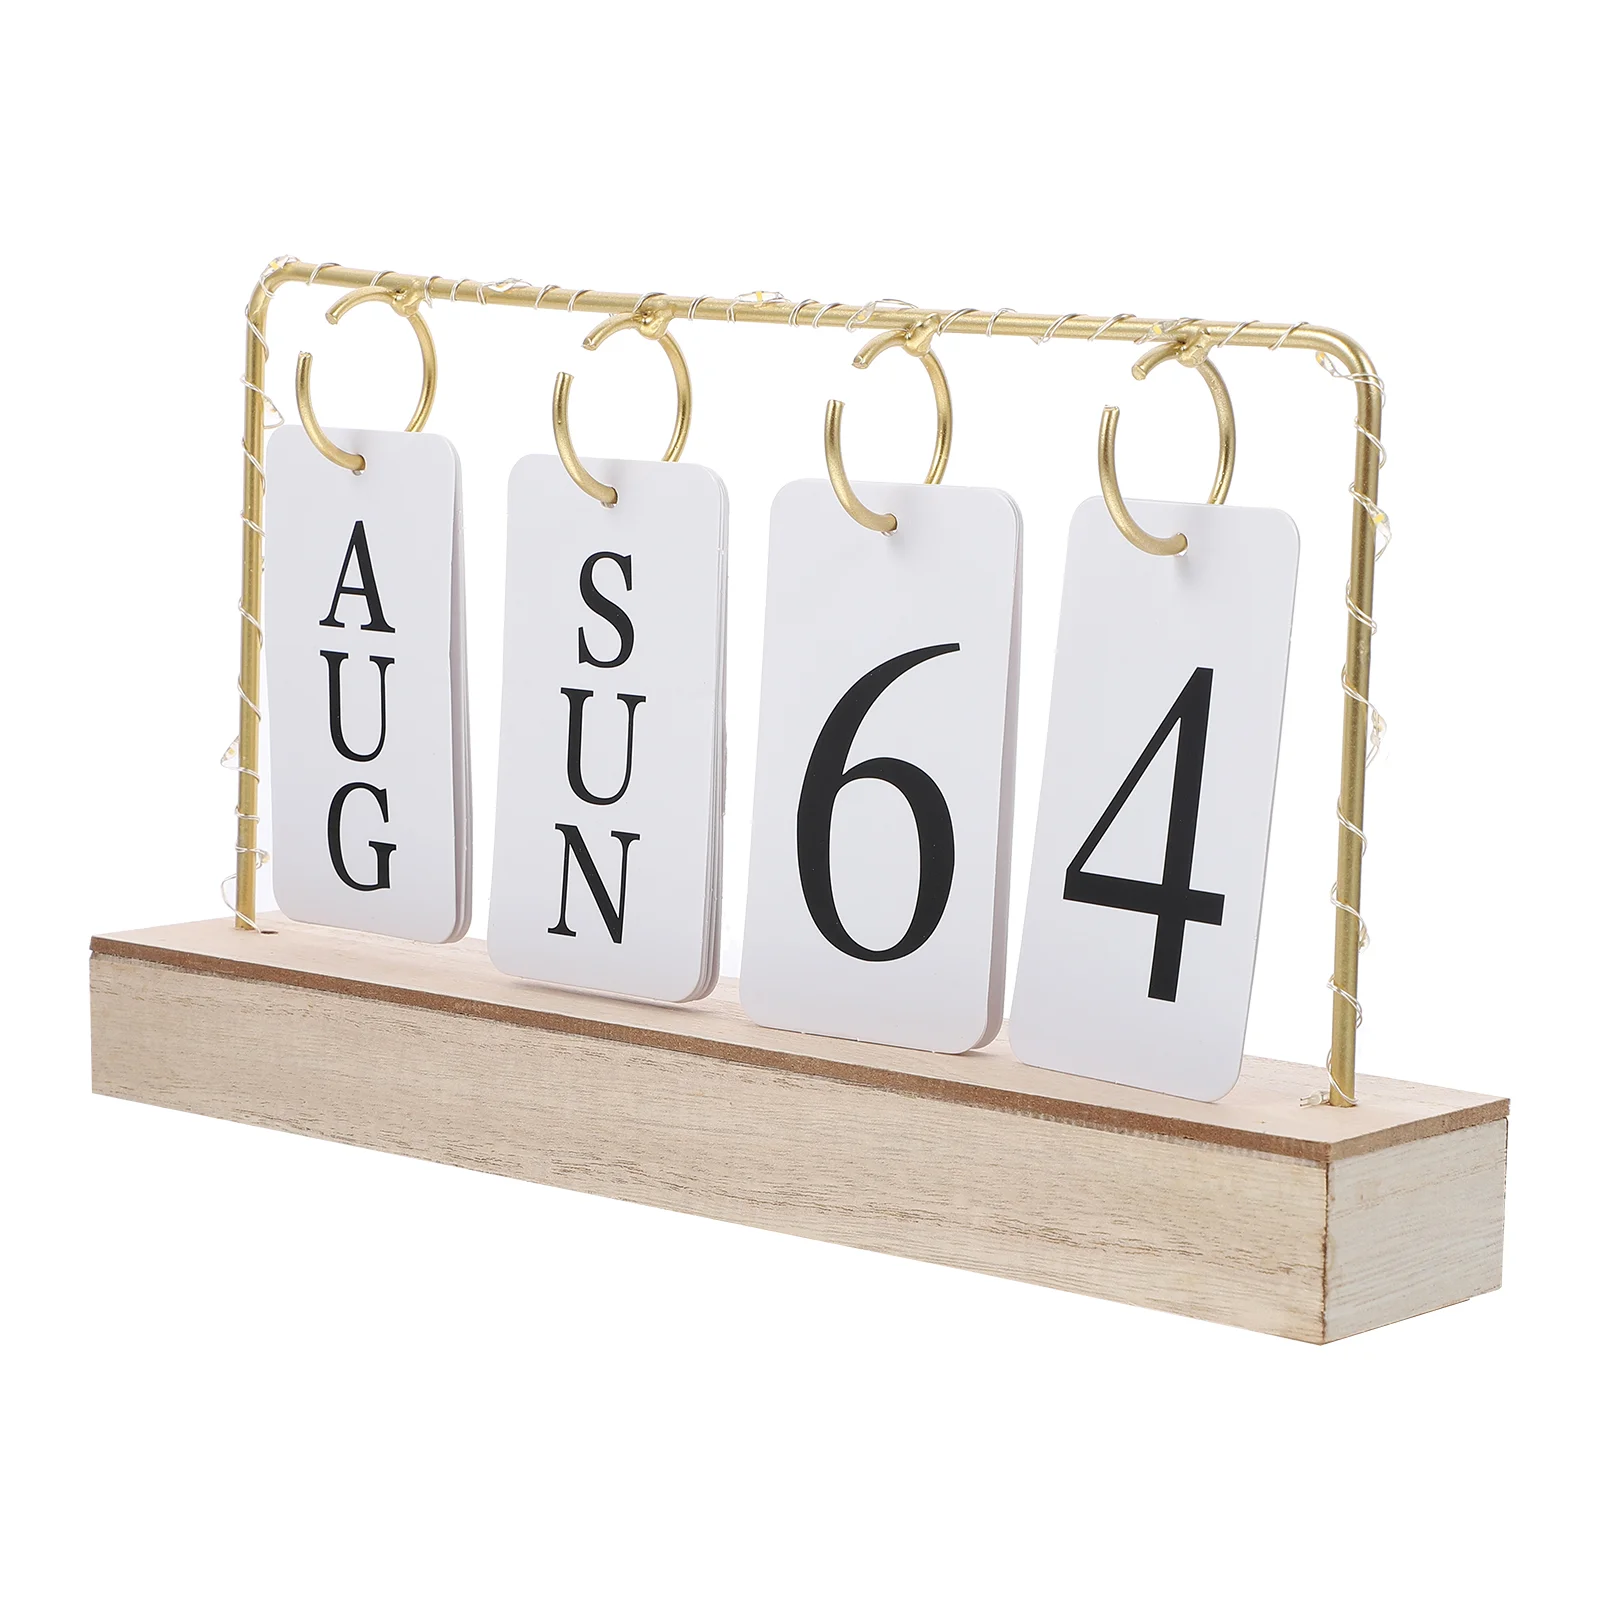  Винтажный деревянный вечный календарь Flip Month Date Display Со светодиодной подсветкой для офиса, украшения дома, фотографии, реквизита, Advent